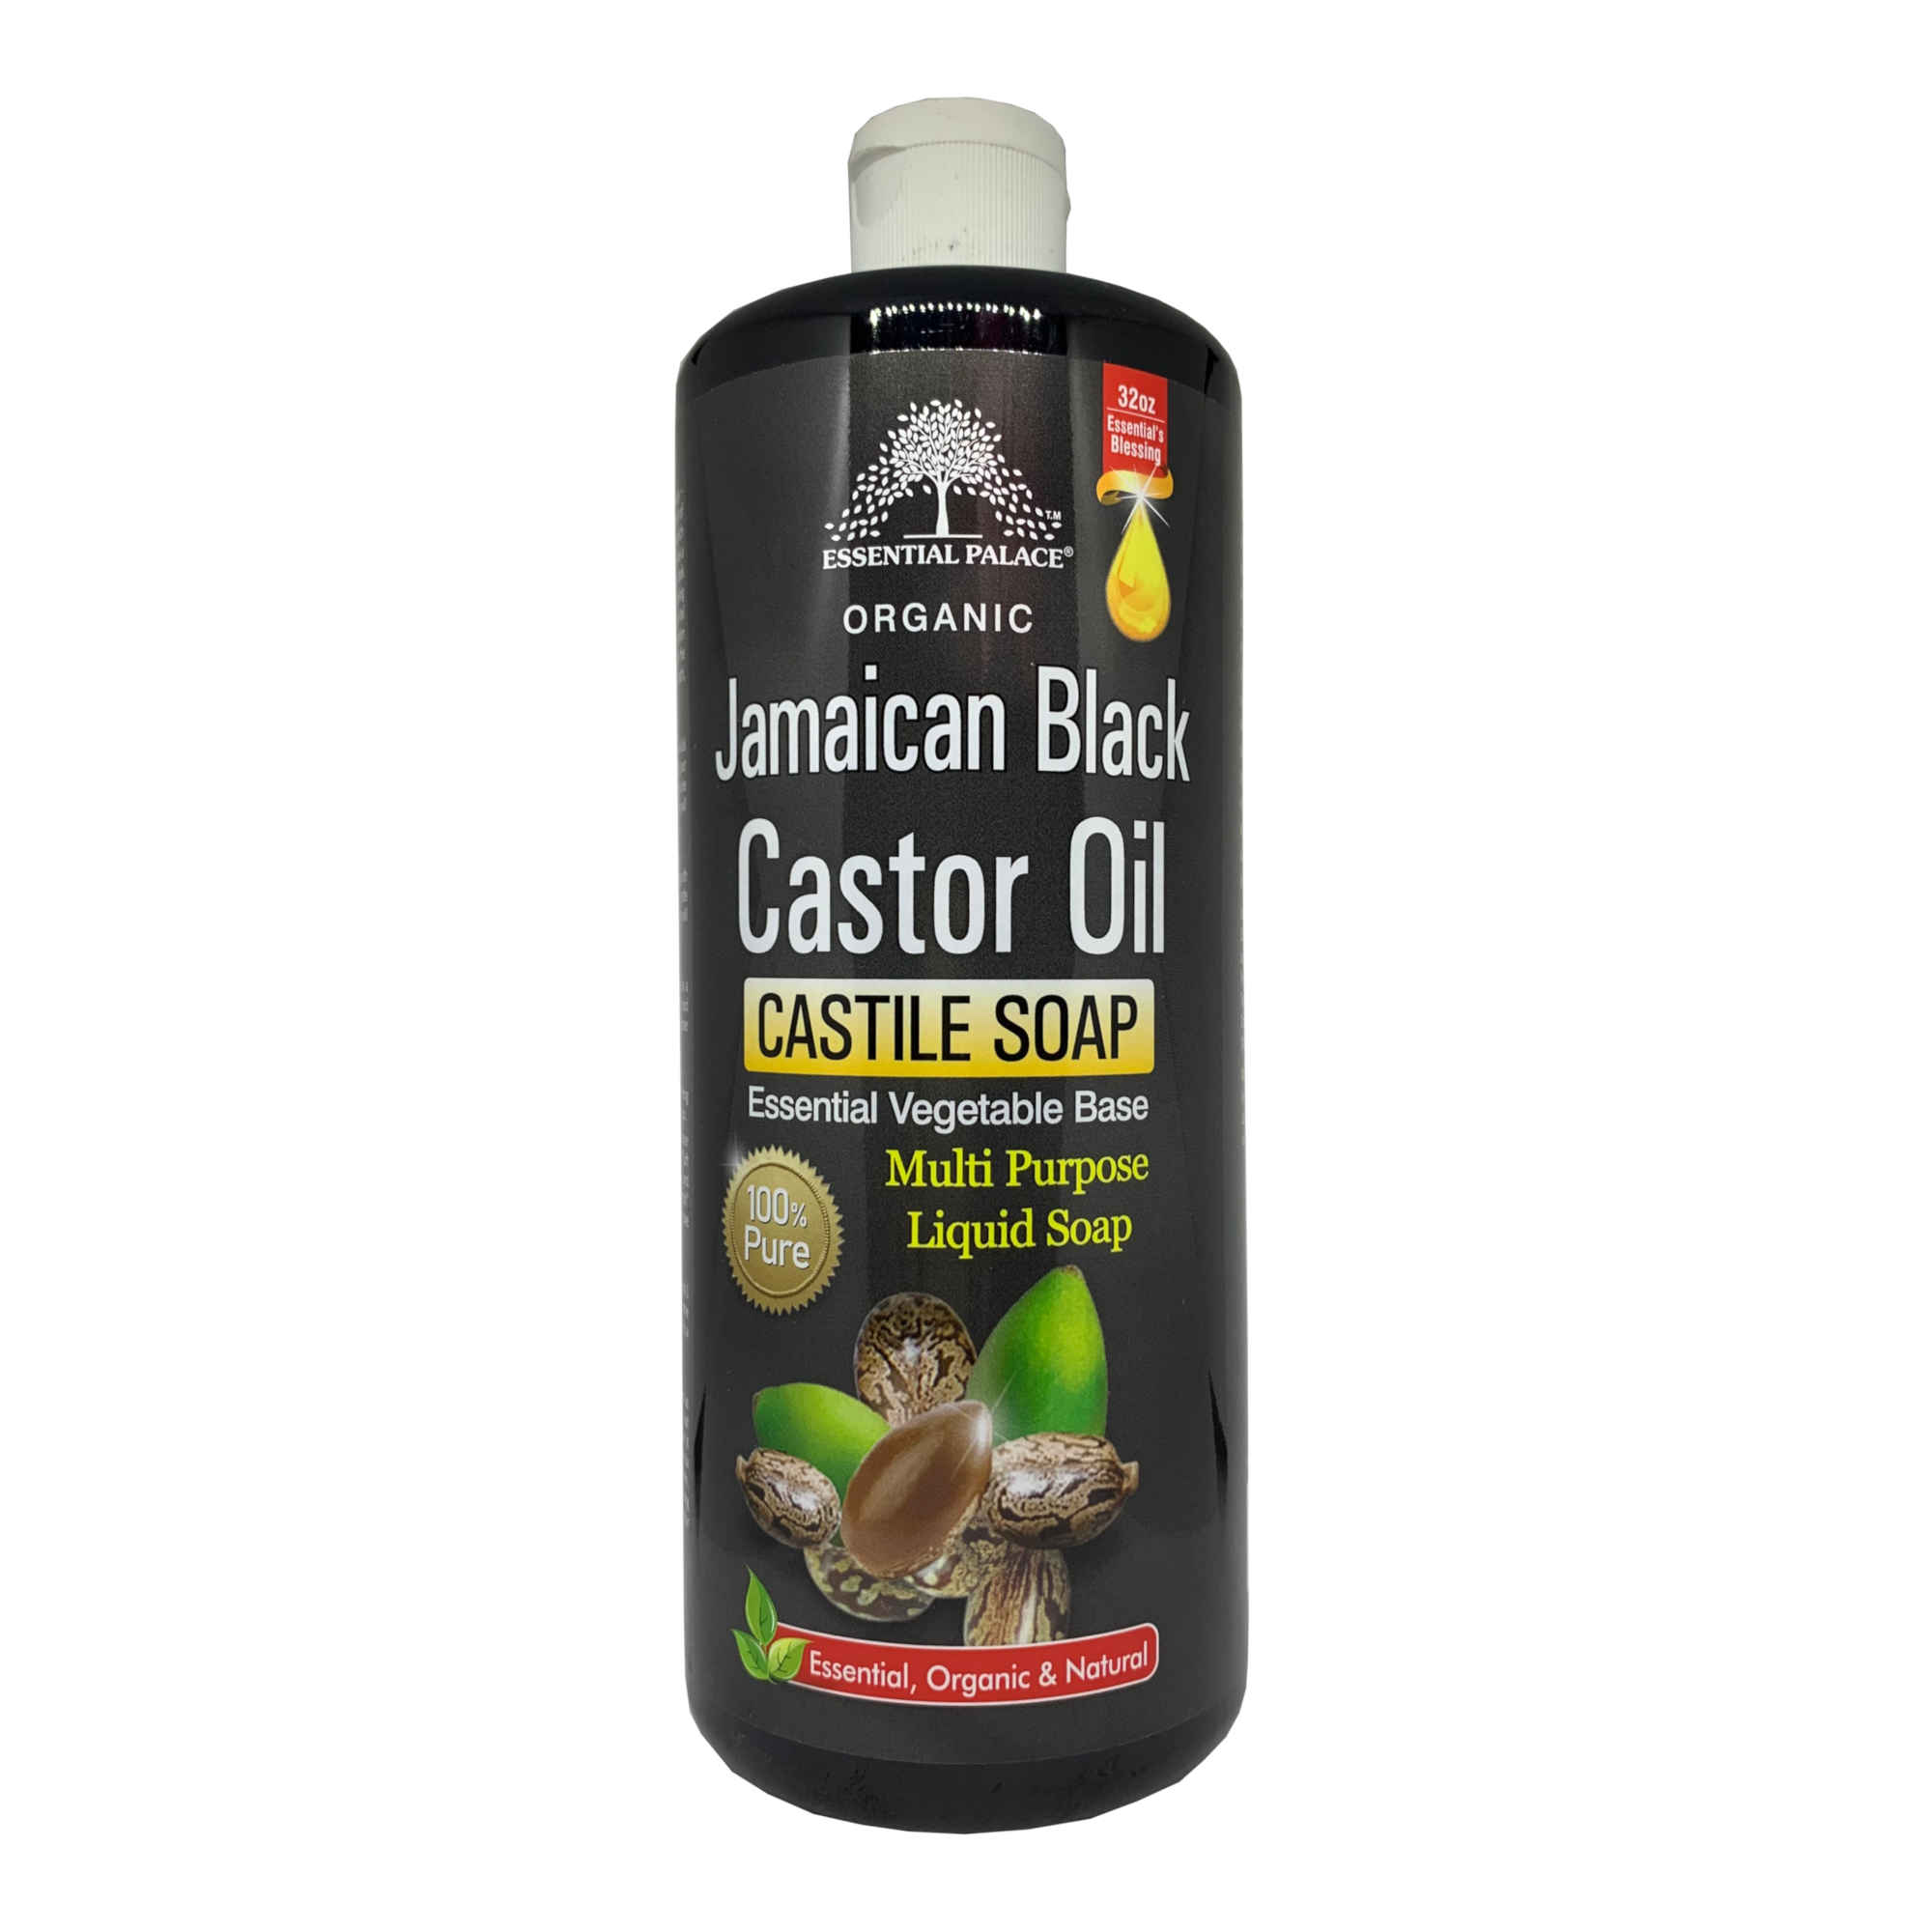 Essential Palace Jamaican Black Castor Oil Castile Soap 32 OZ Front